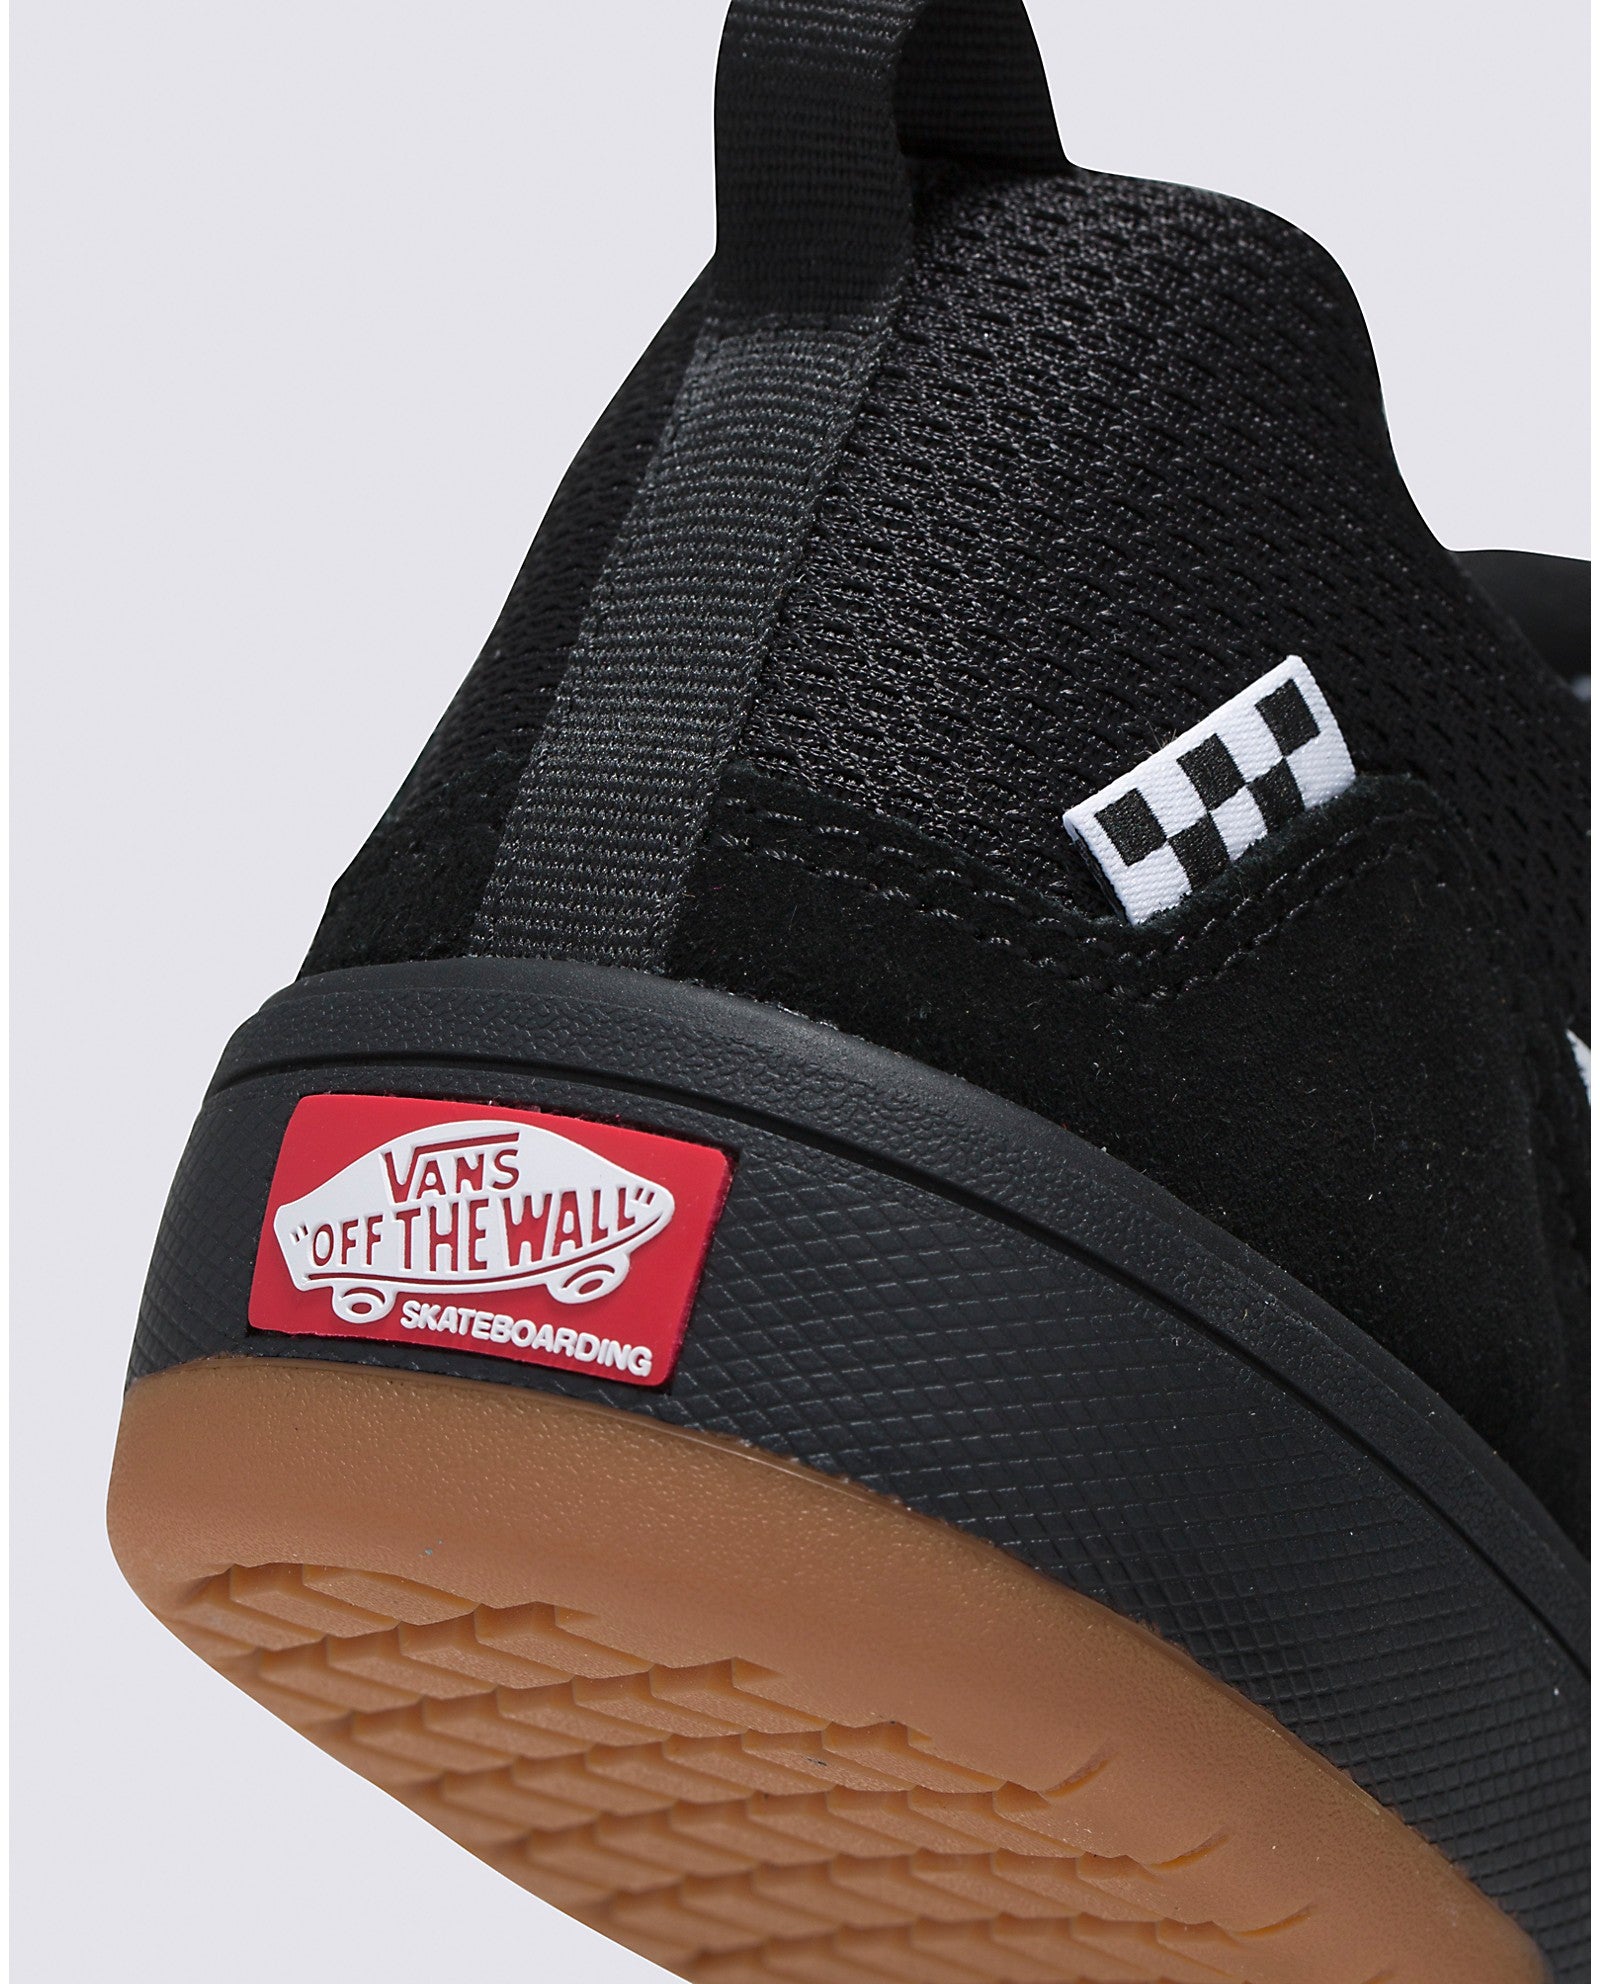 Black/White Zahba Vans Skateboarding Shoe Detail